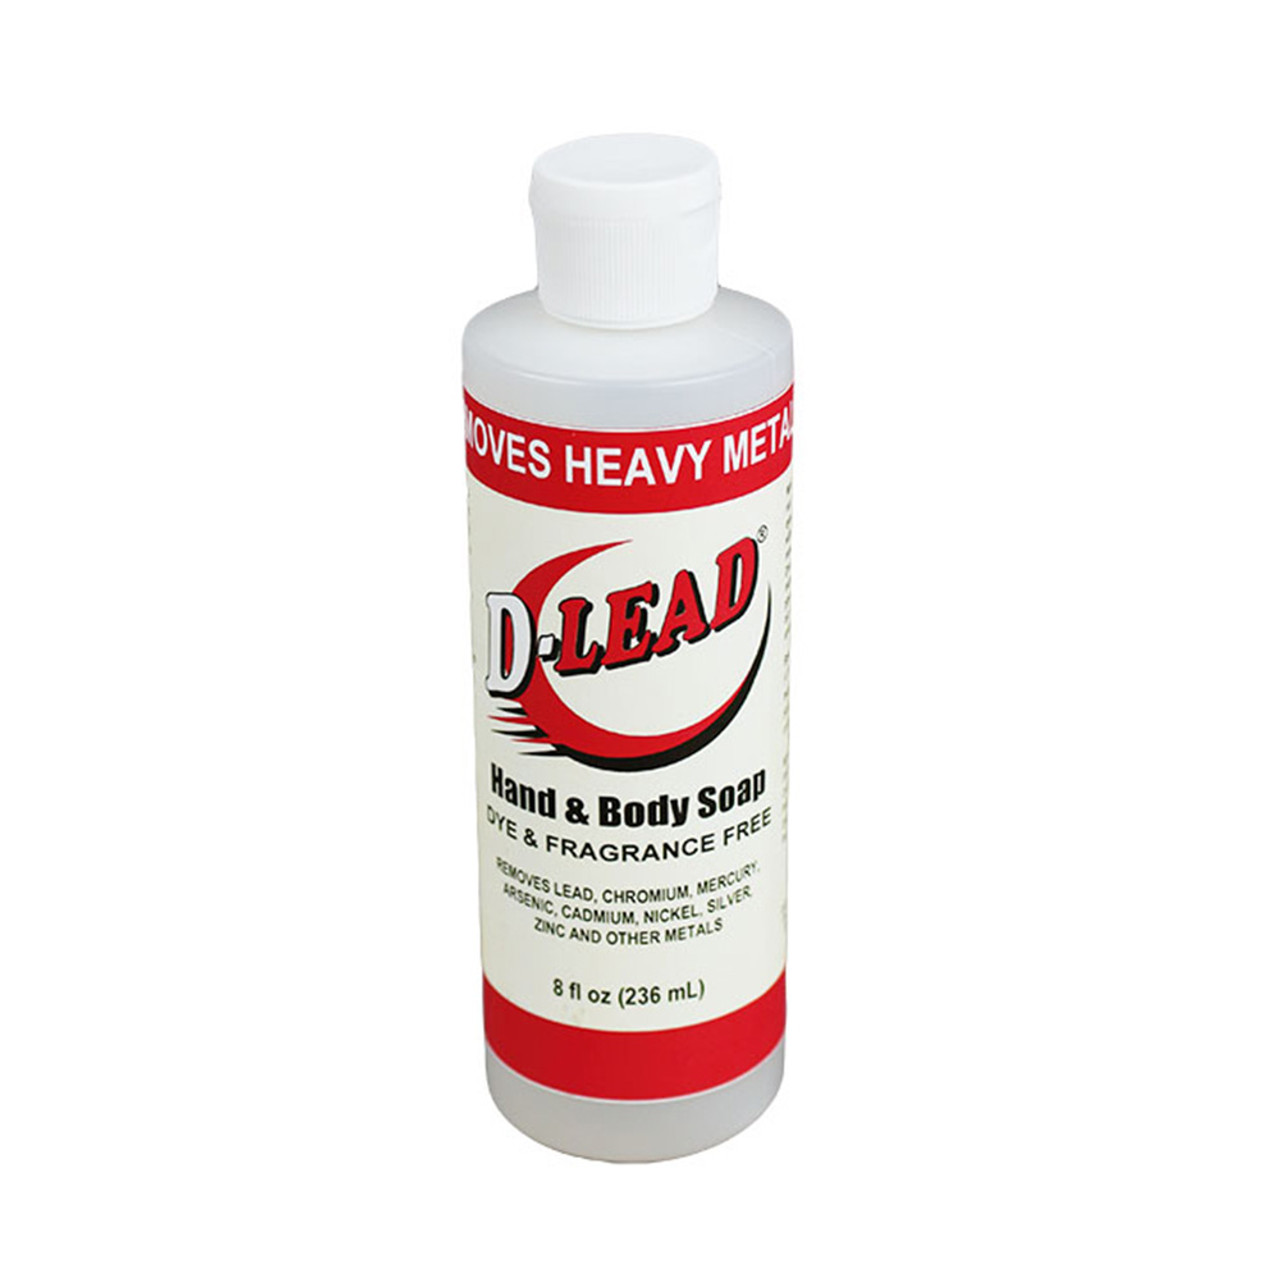 D-lead Hand & Body Soap, Dye & Fragrance-Free, 8 oz, 4221es-008